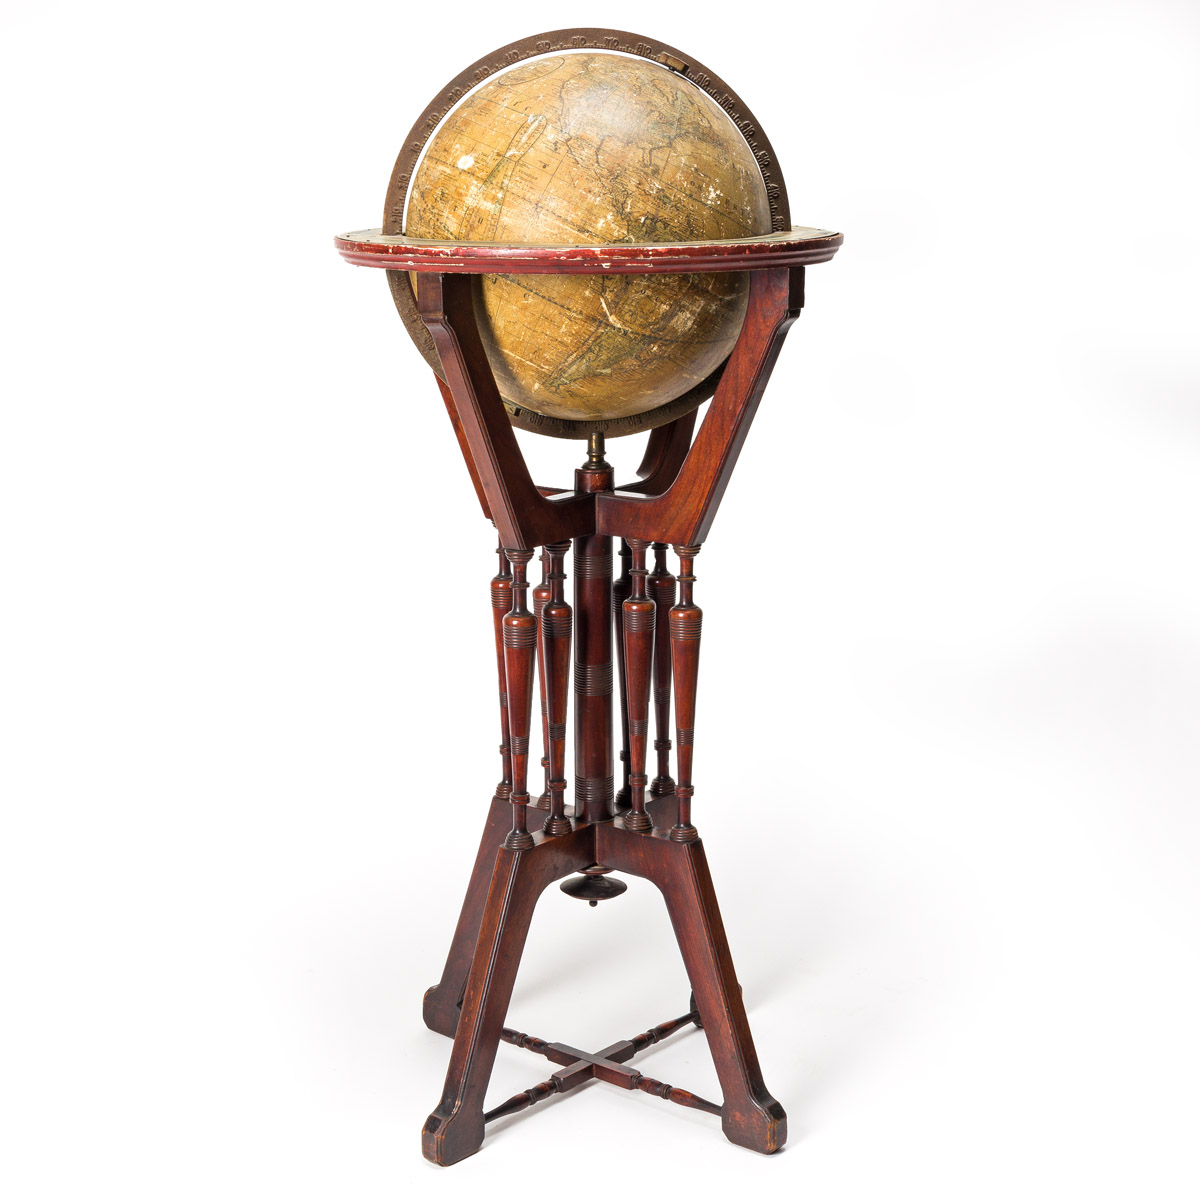 The Franklin Terrestrial Globe.